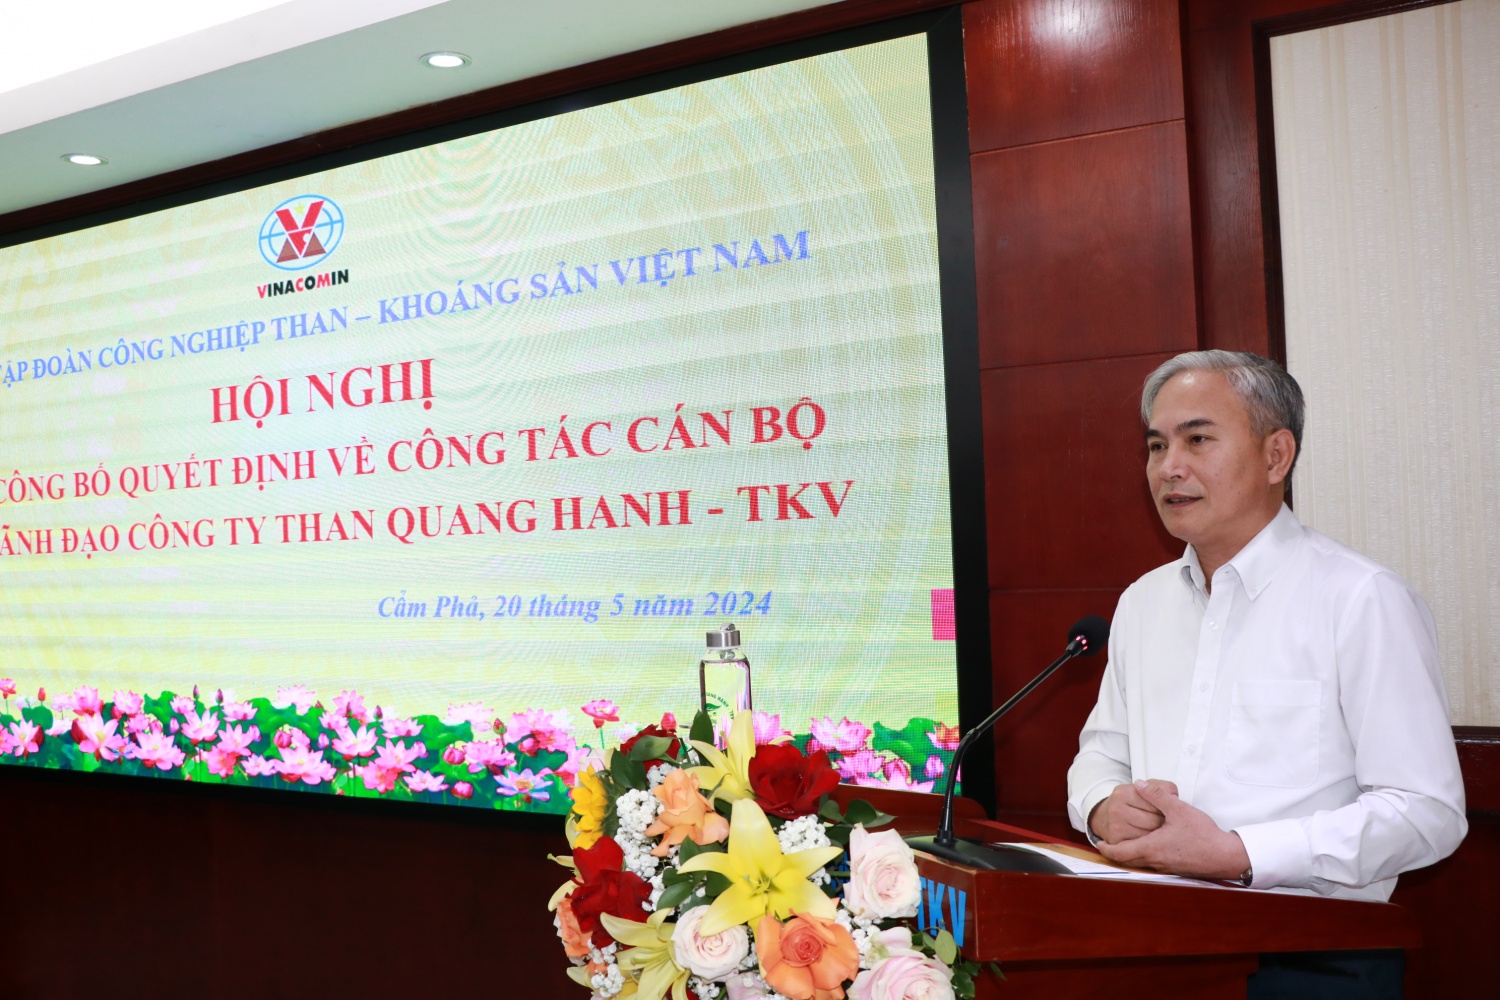 TKV công bố và trao quyết định bổ nhiệm Giám đốc Công ty Than Quang Hanh